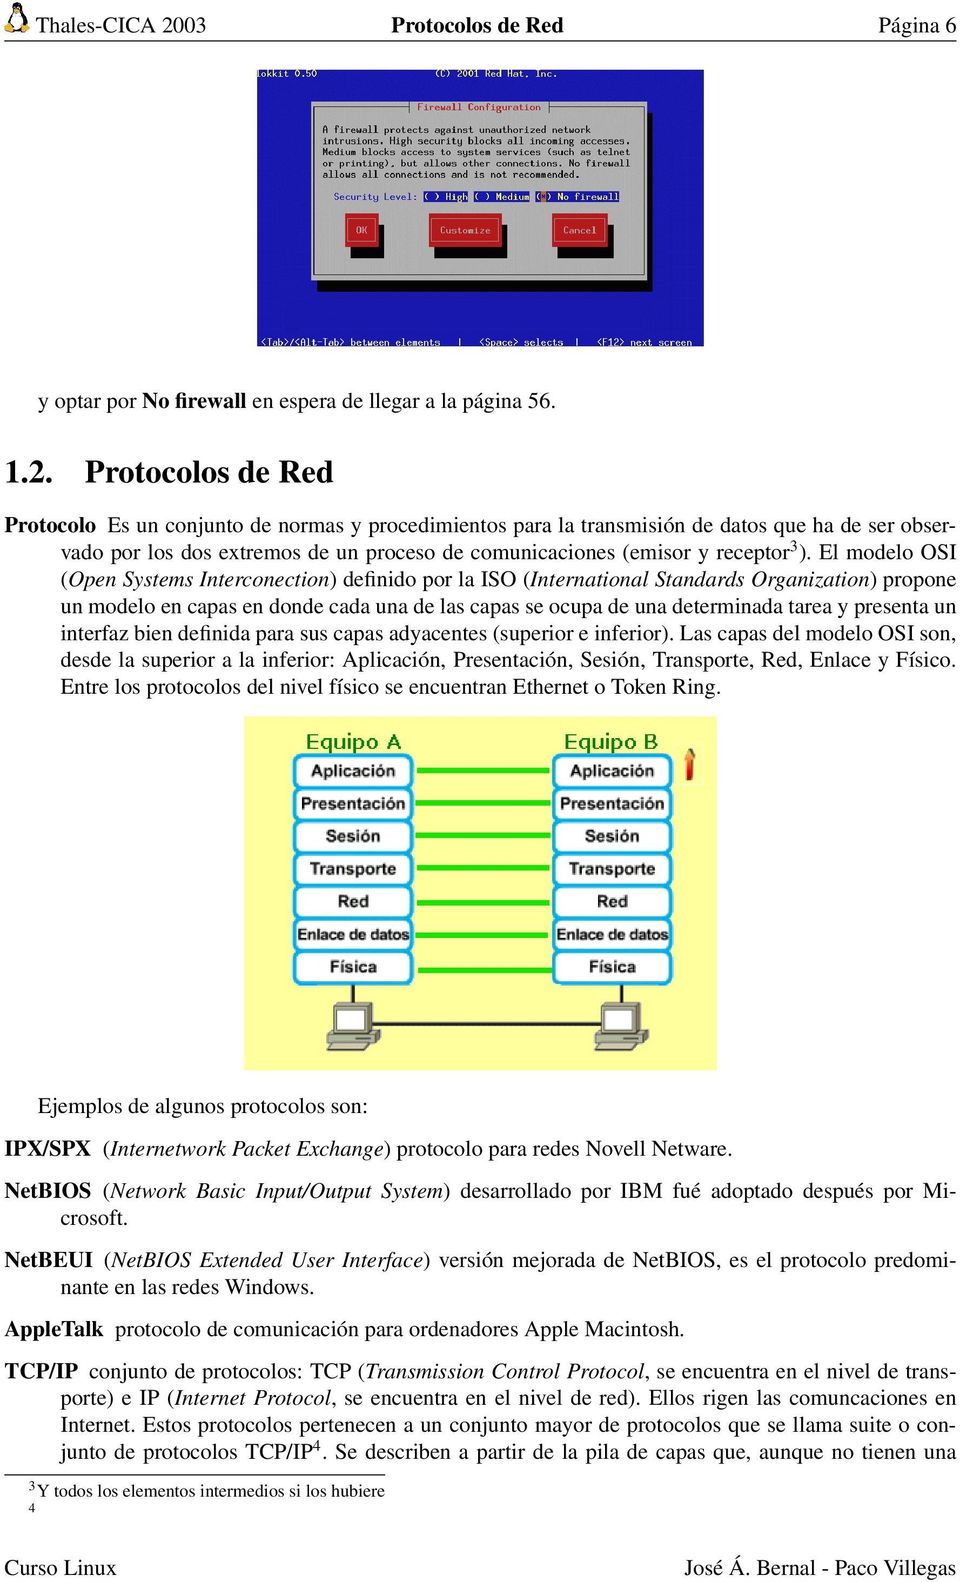 Protocolos de Red Protocolo Es un conjunto de normas y procedimientos para la transmisión de datos que ha de ser observado por los dos extremos de un proceso de comunicaciones (emisor y receptor 3 ).